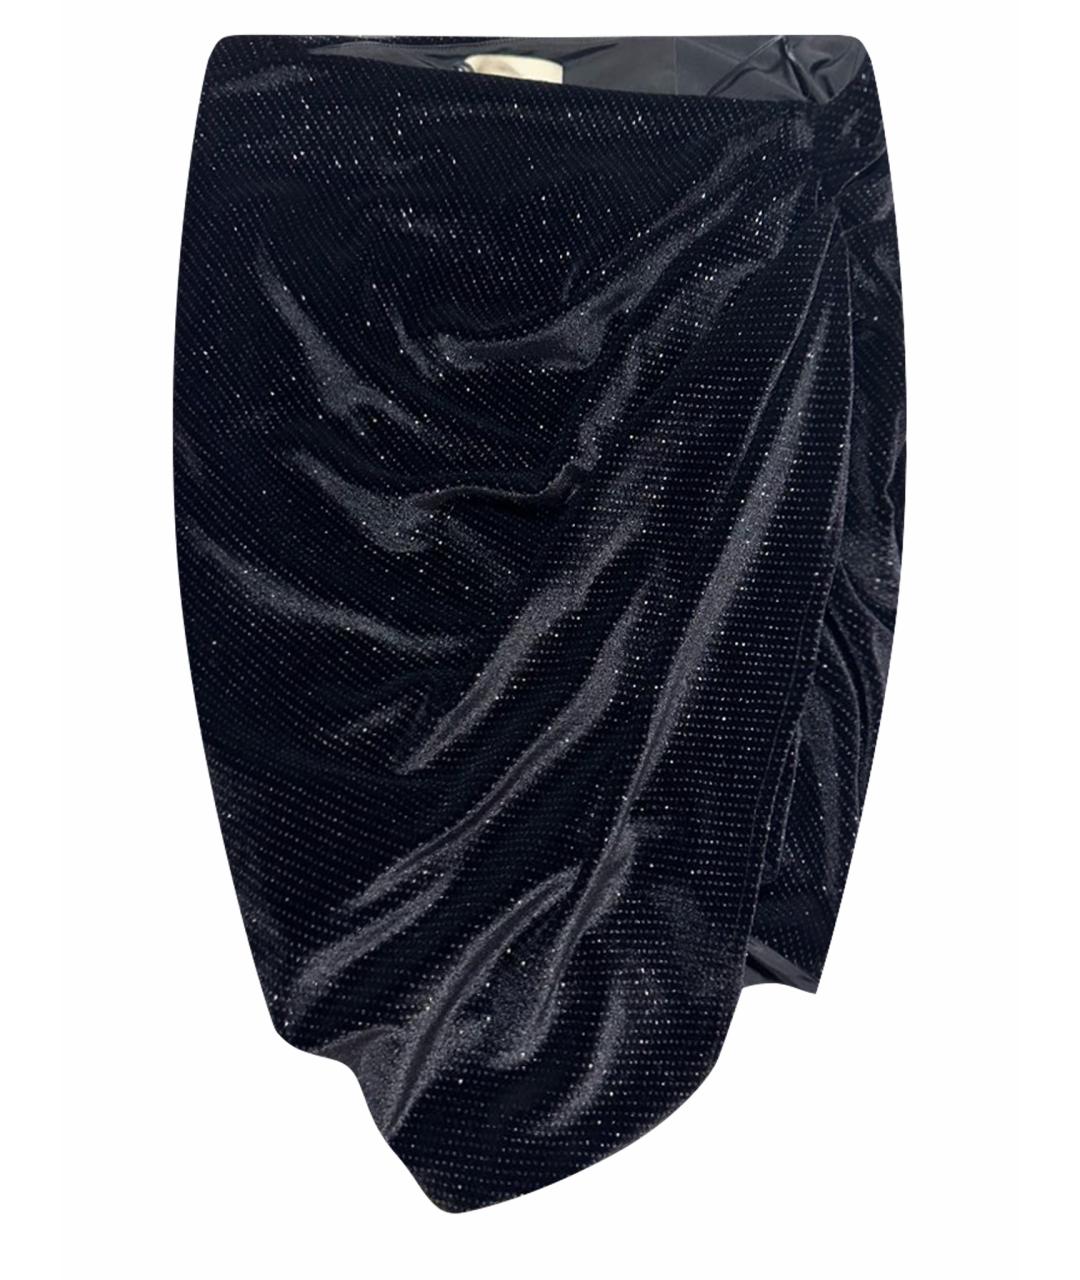 ALEXANDRE VAUTHIER Черная полиэстеровая юбка мини, фото 1